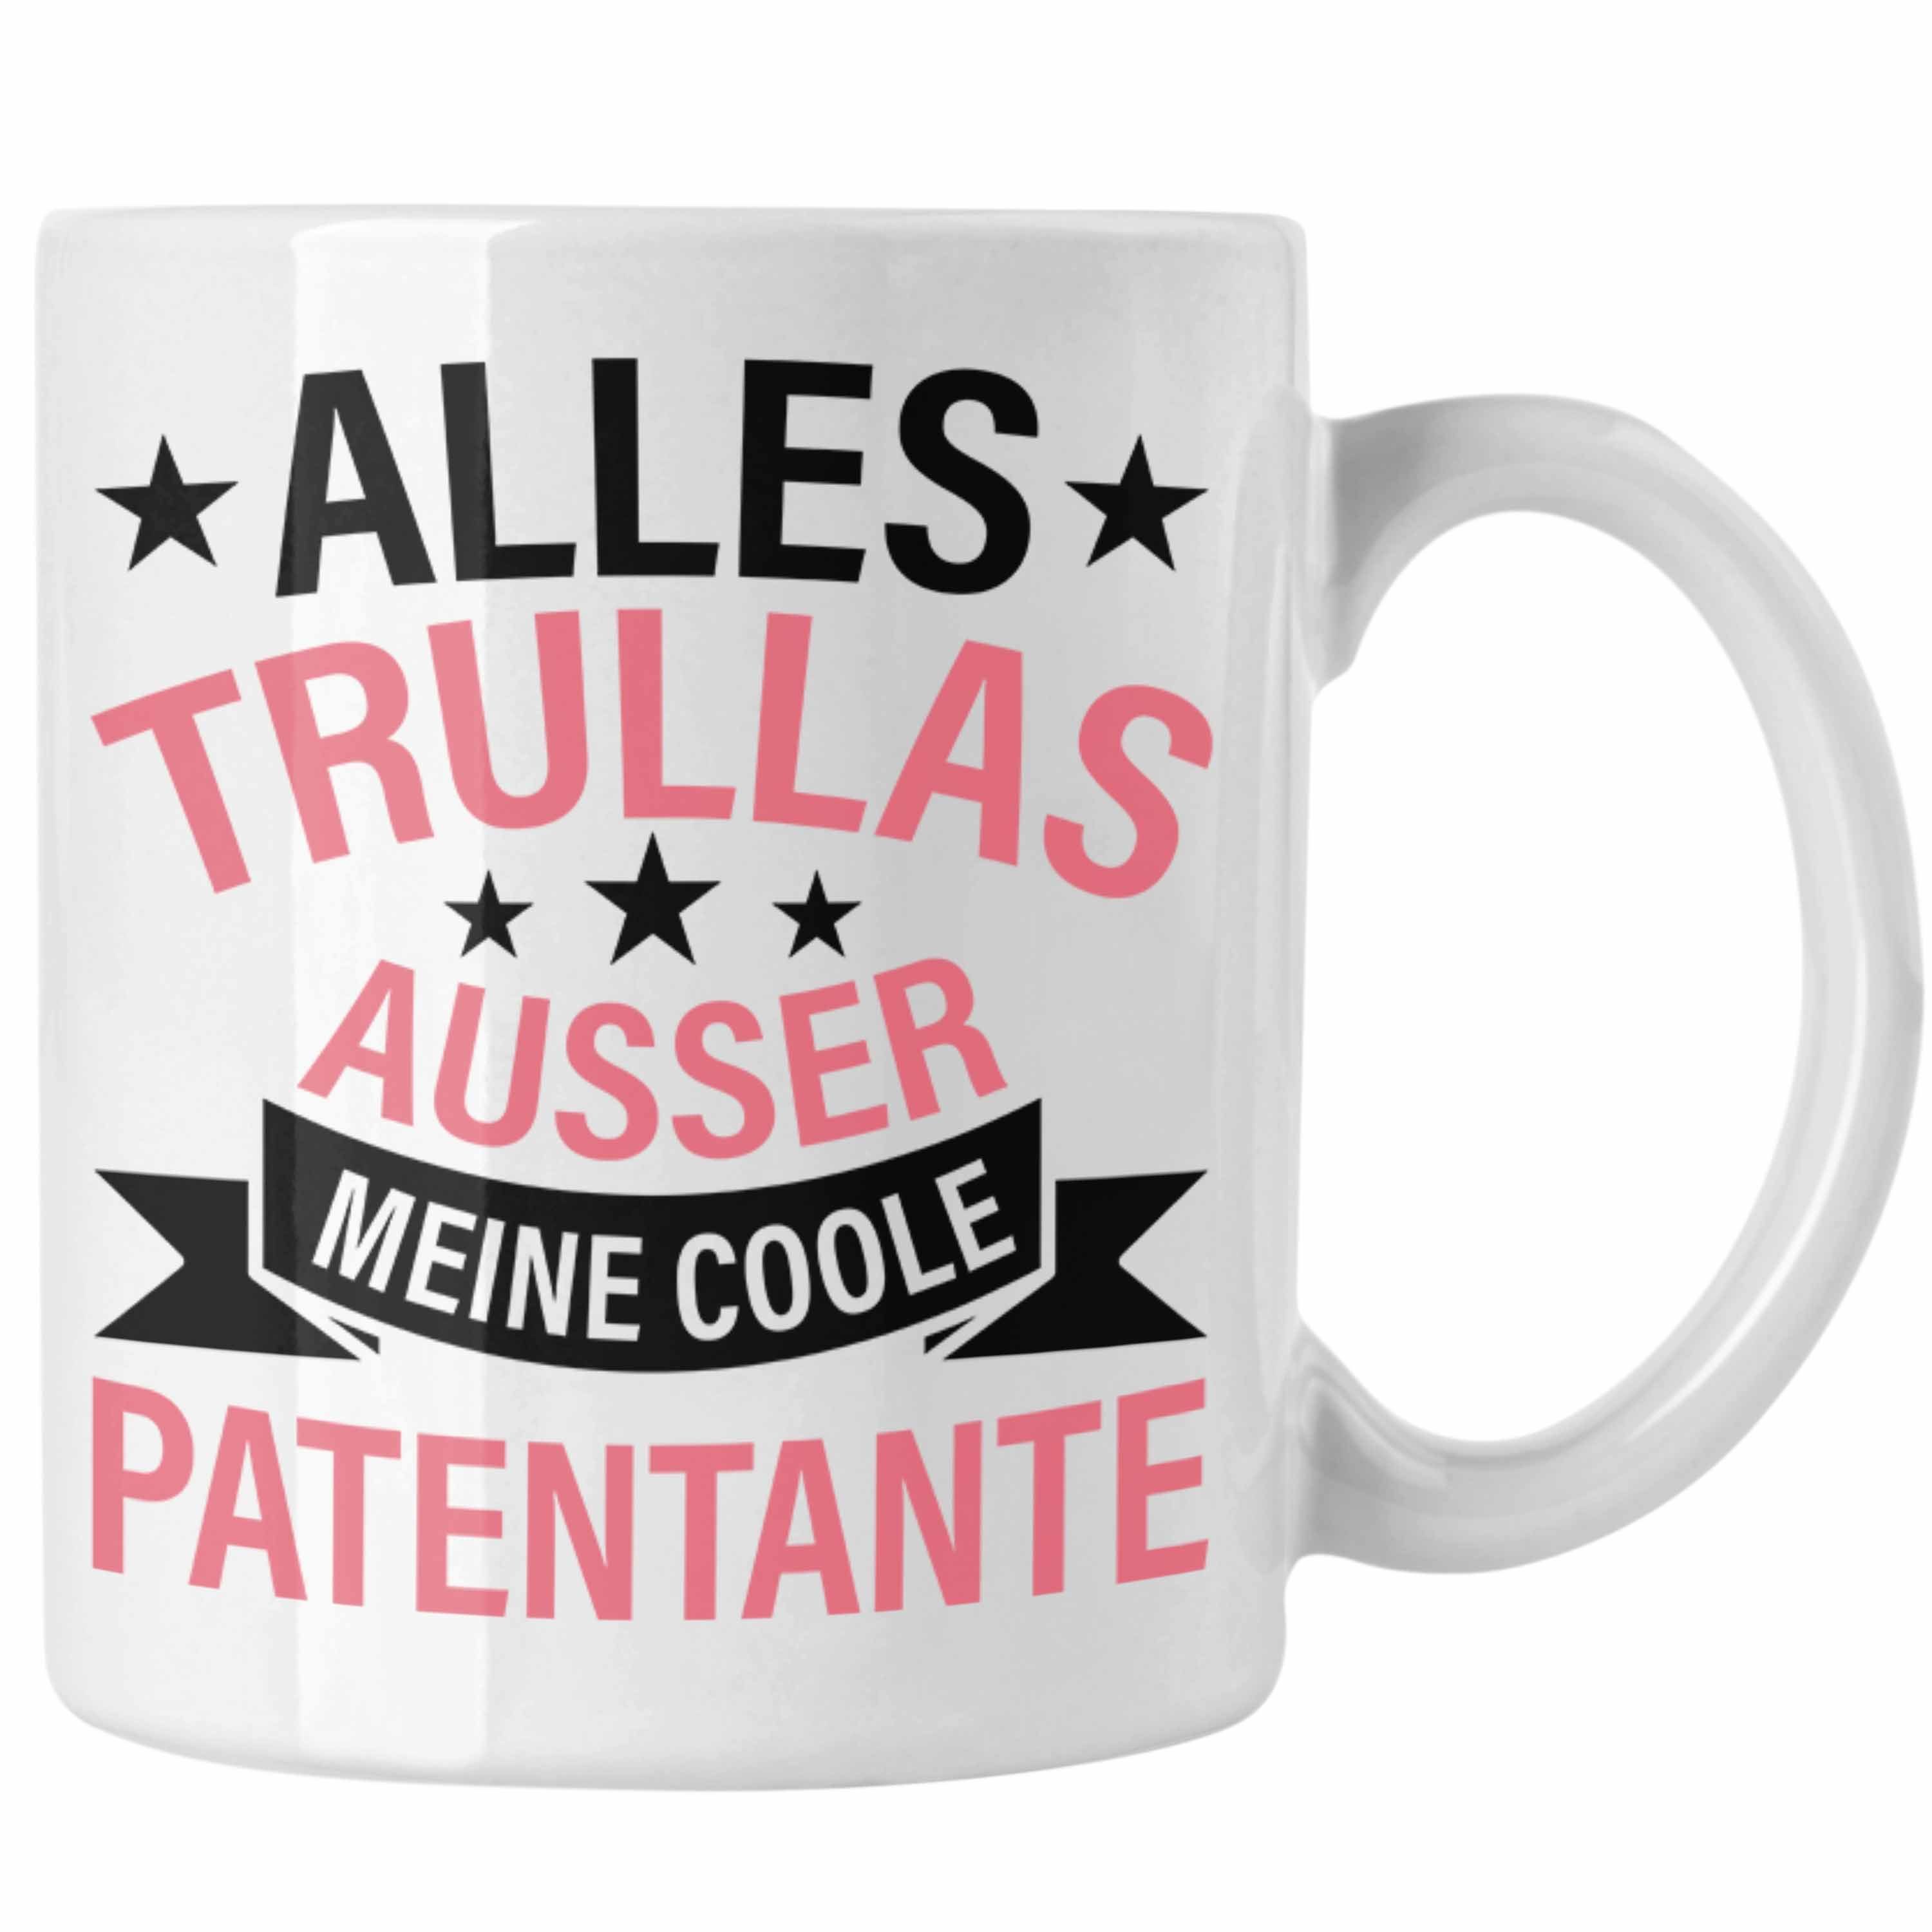 Tasse - Geschenk Patentante Alles Geburtstag Geschenkidee Weiss Tasse Lustig Trendation Trendation Trullas